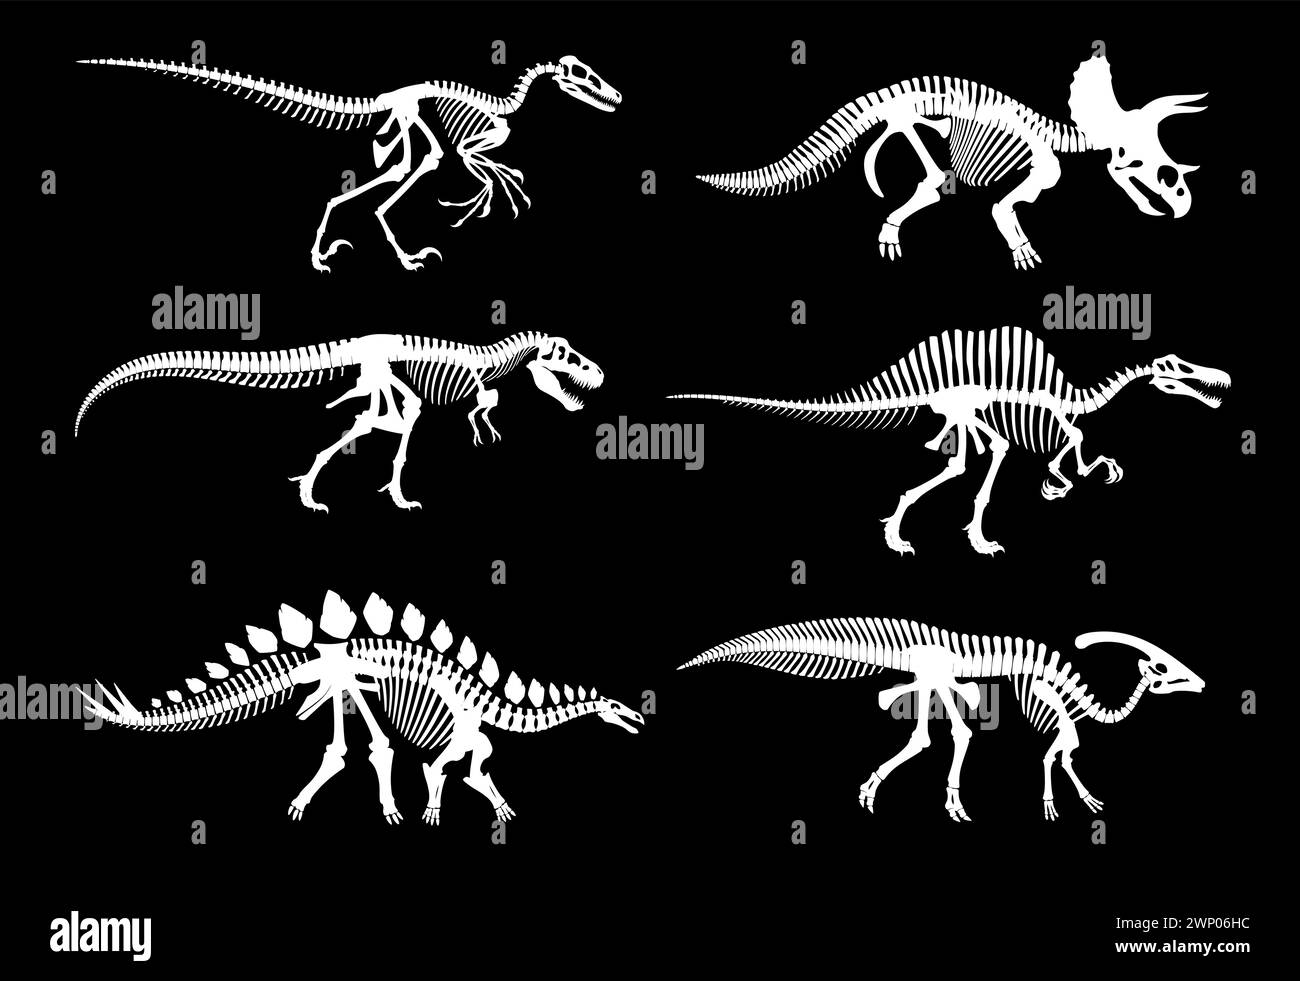 Dinosaurier-fossile Skelette und jurassische Dino-Knochen-Abdrücke, Vektorweiße Silhouetten. Dinosaurierarchäologie fossile Skelette ausgestorbener Reptilien, T-rex t Stock Vektor